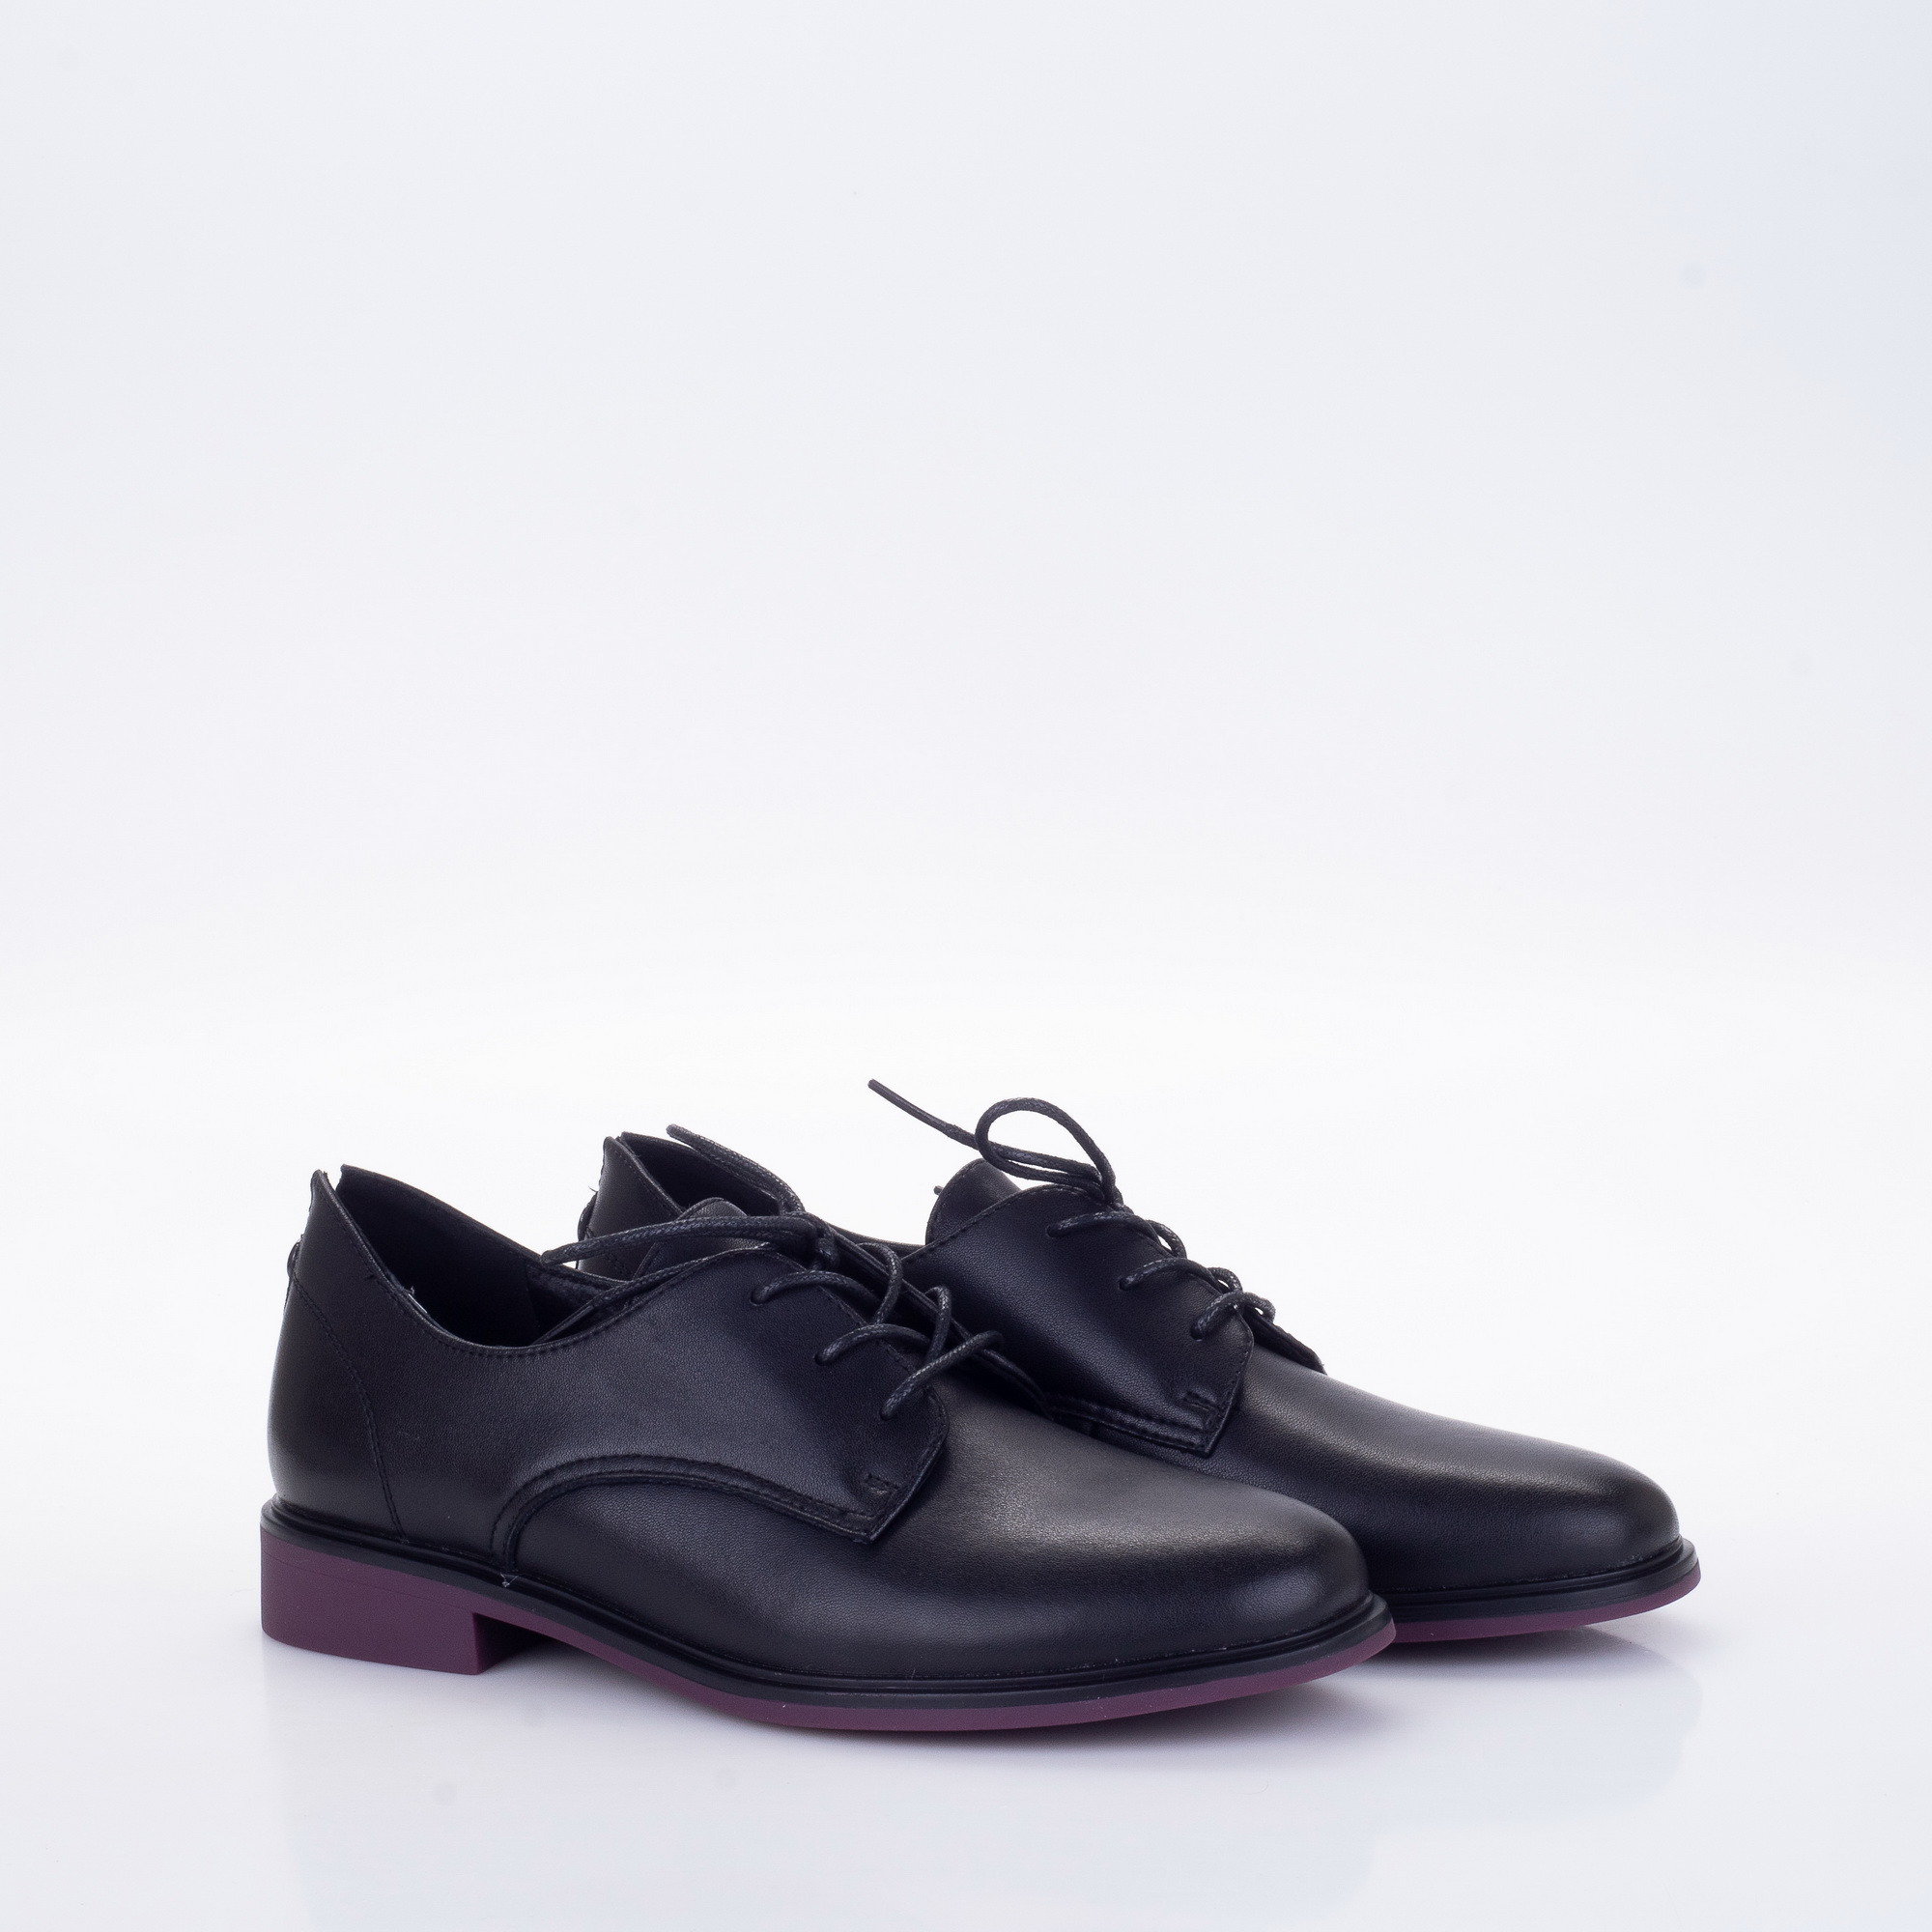 Фото Полуботинки женские LA5 black купить на lauf.shoes